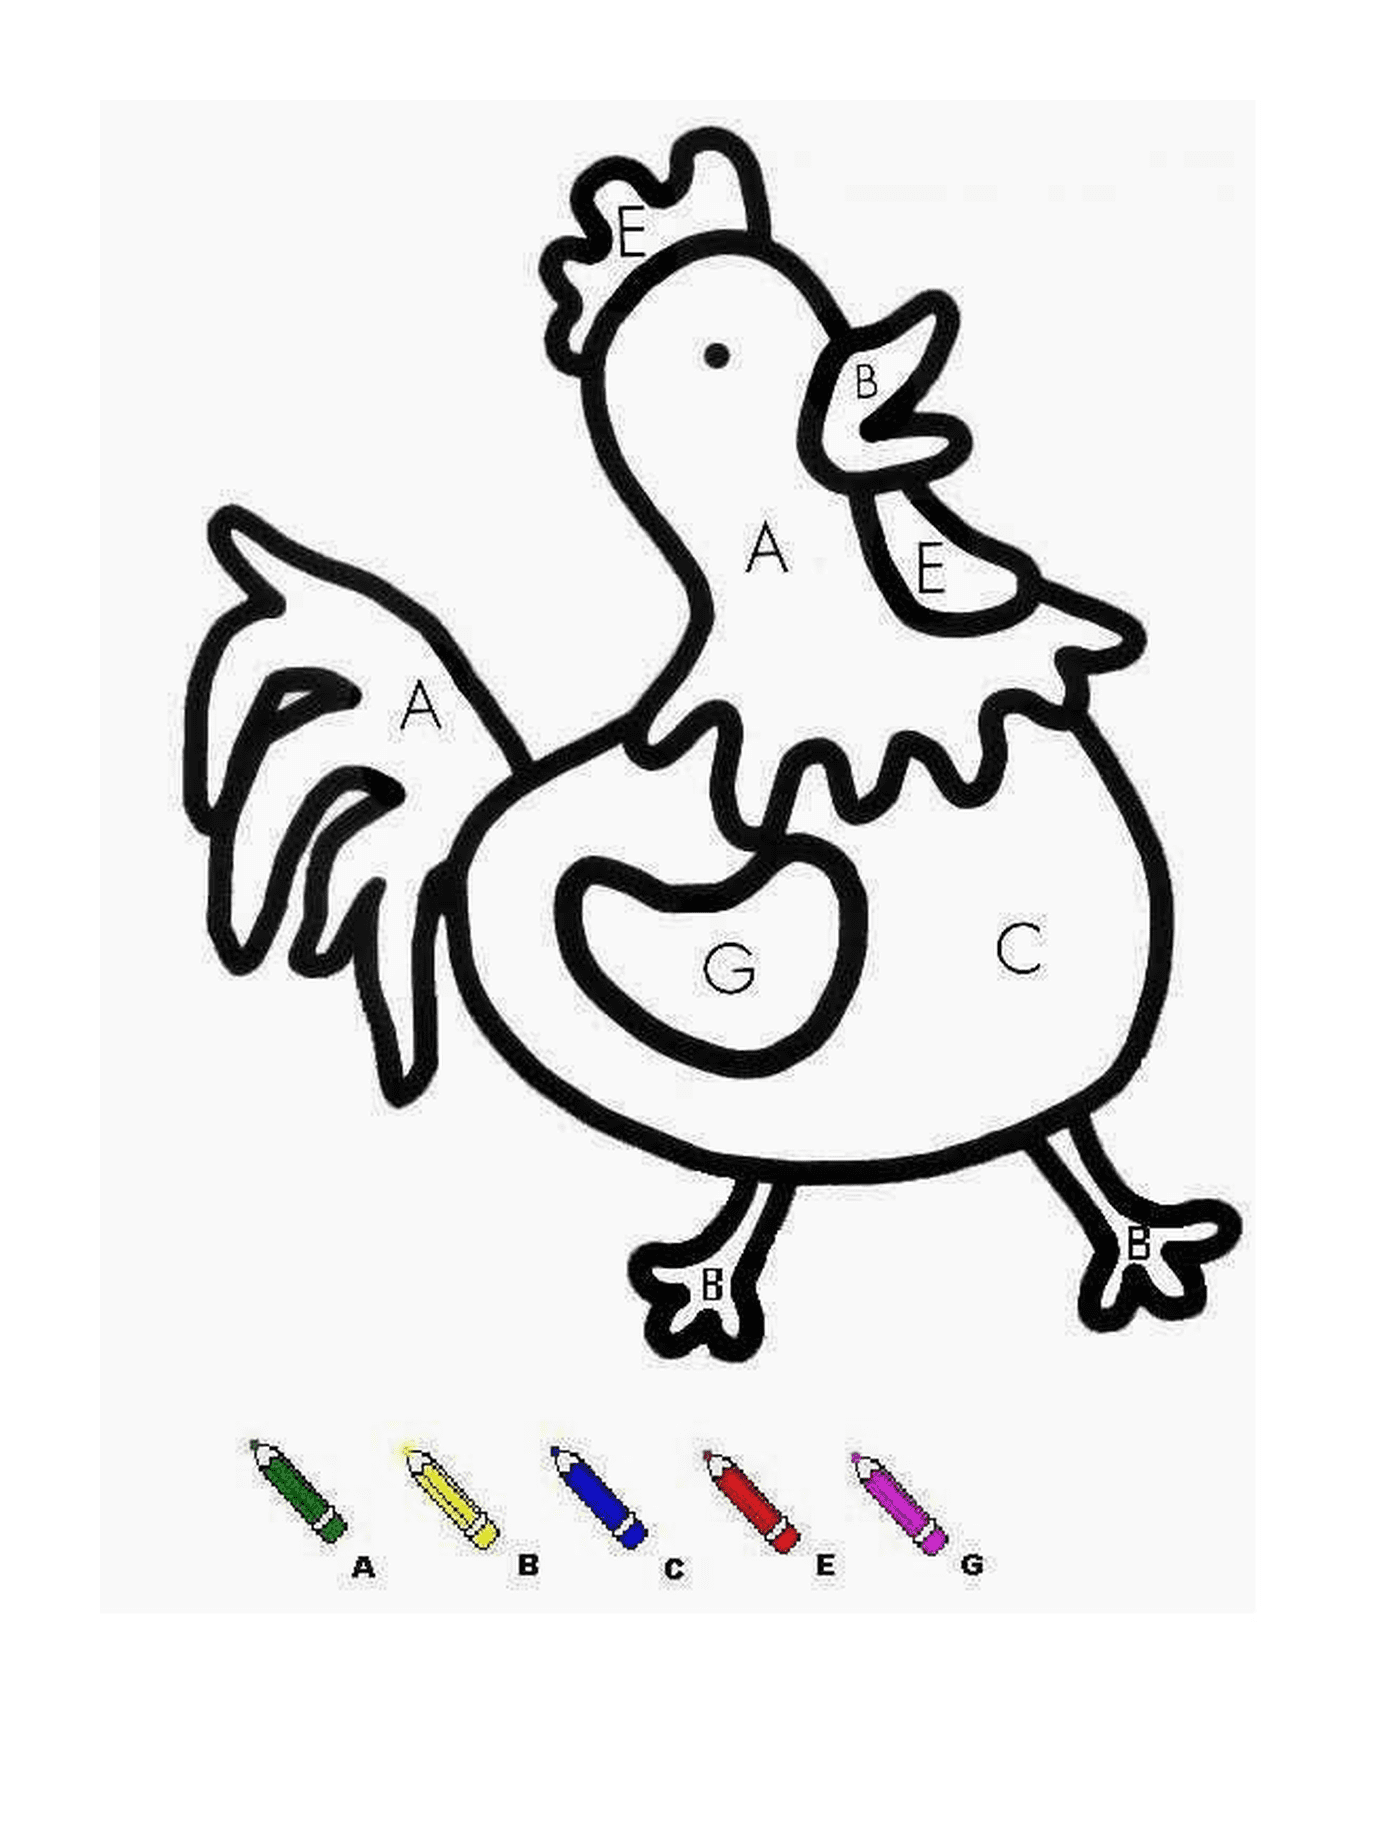  一只有彩色标记的鸡 